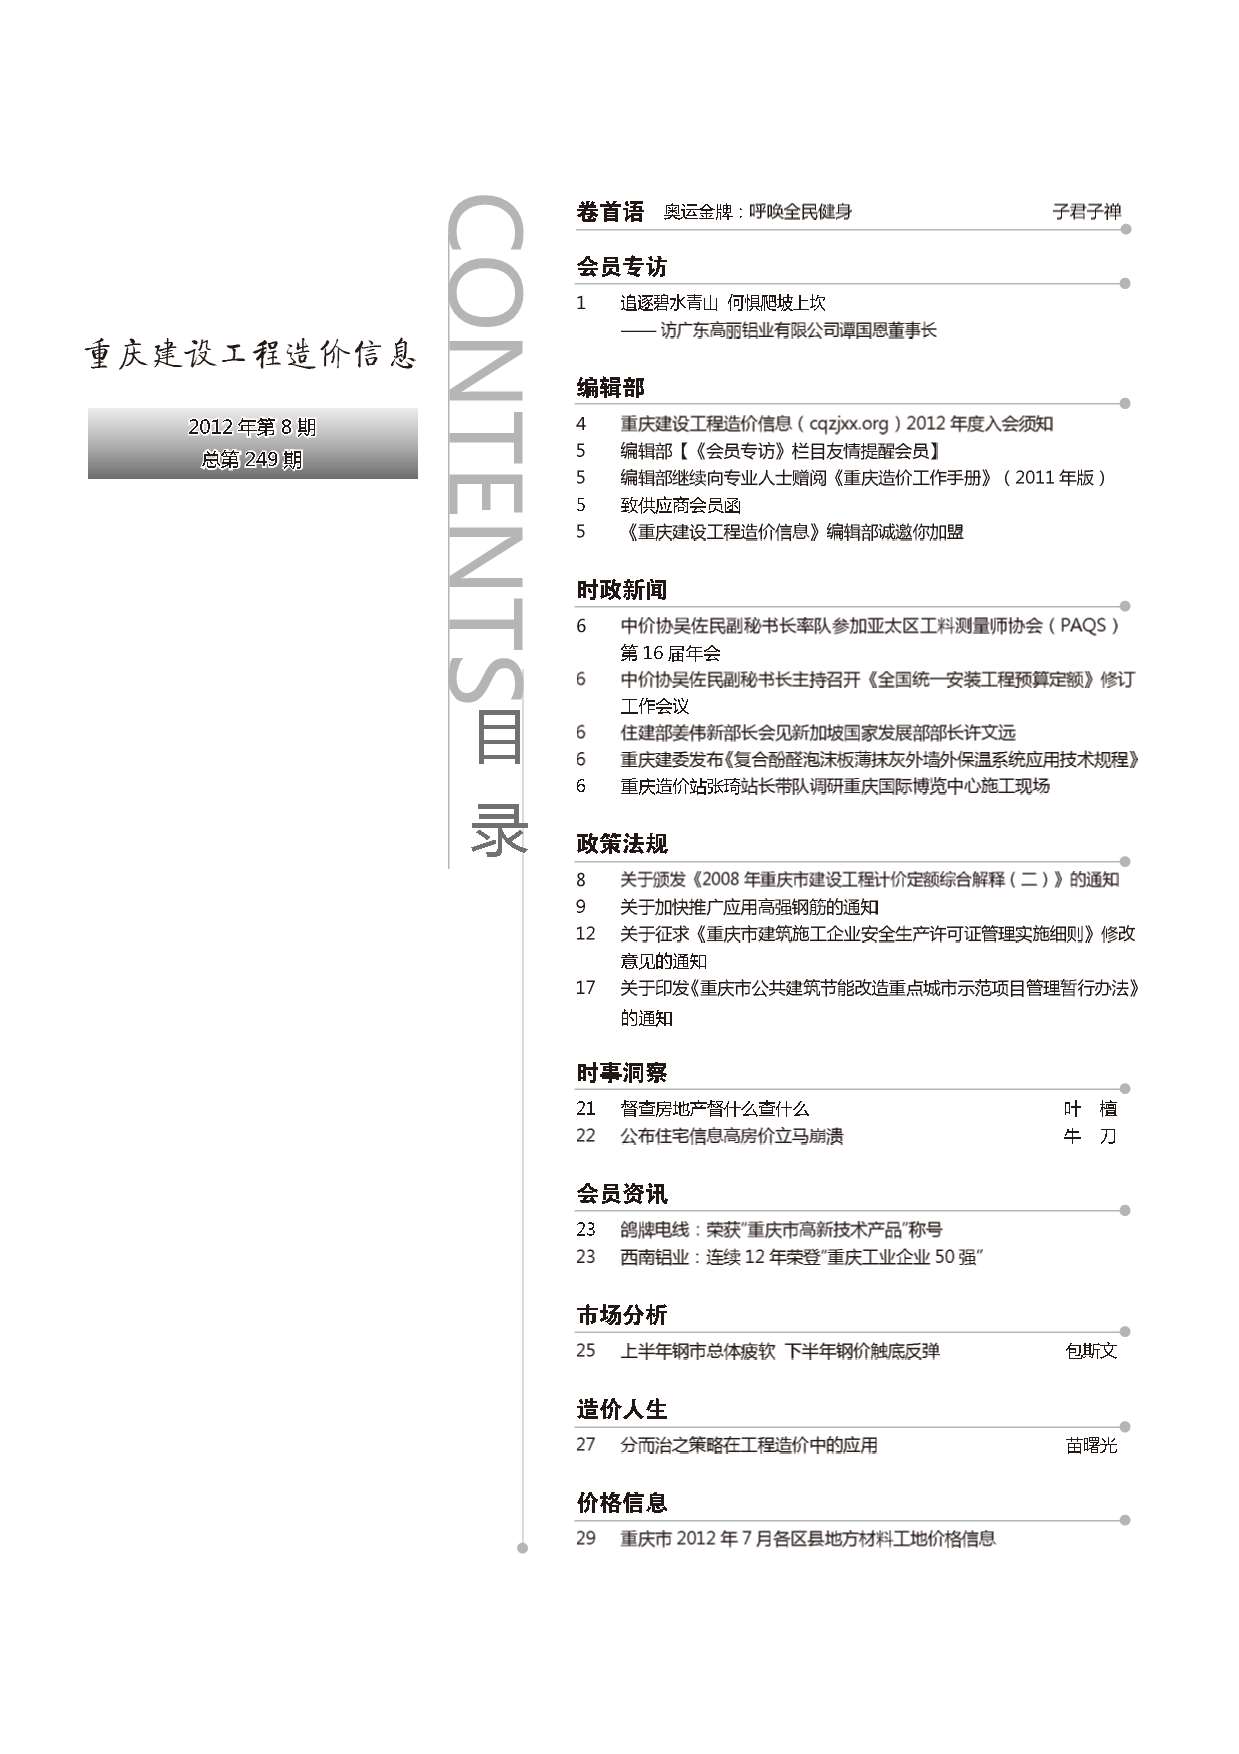 重庆市2012年8月工程造价信息价